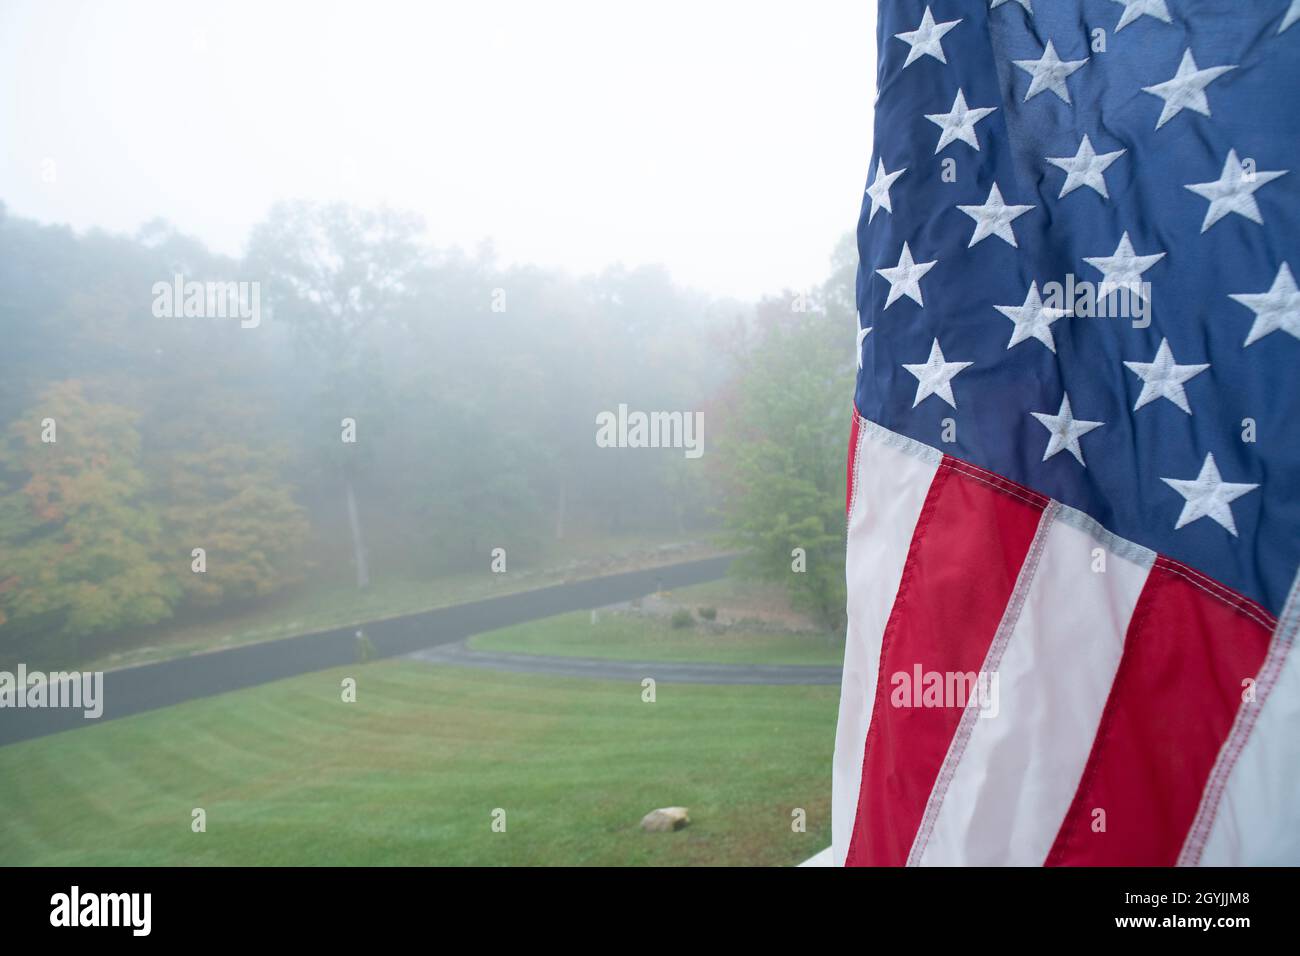 Bandera Americana en el humo/niebla Foto de stock